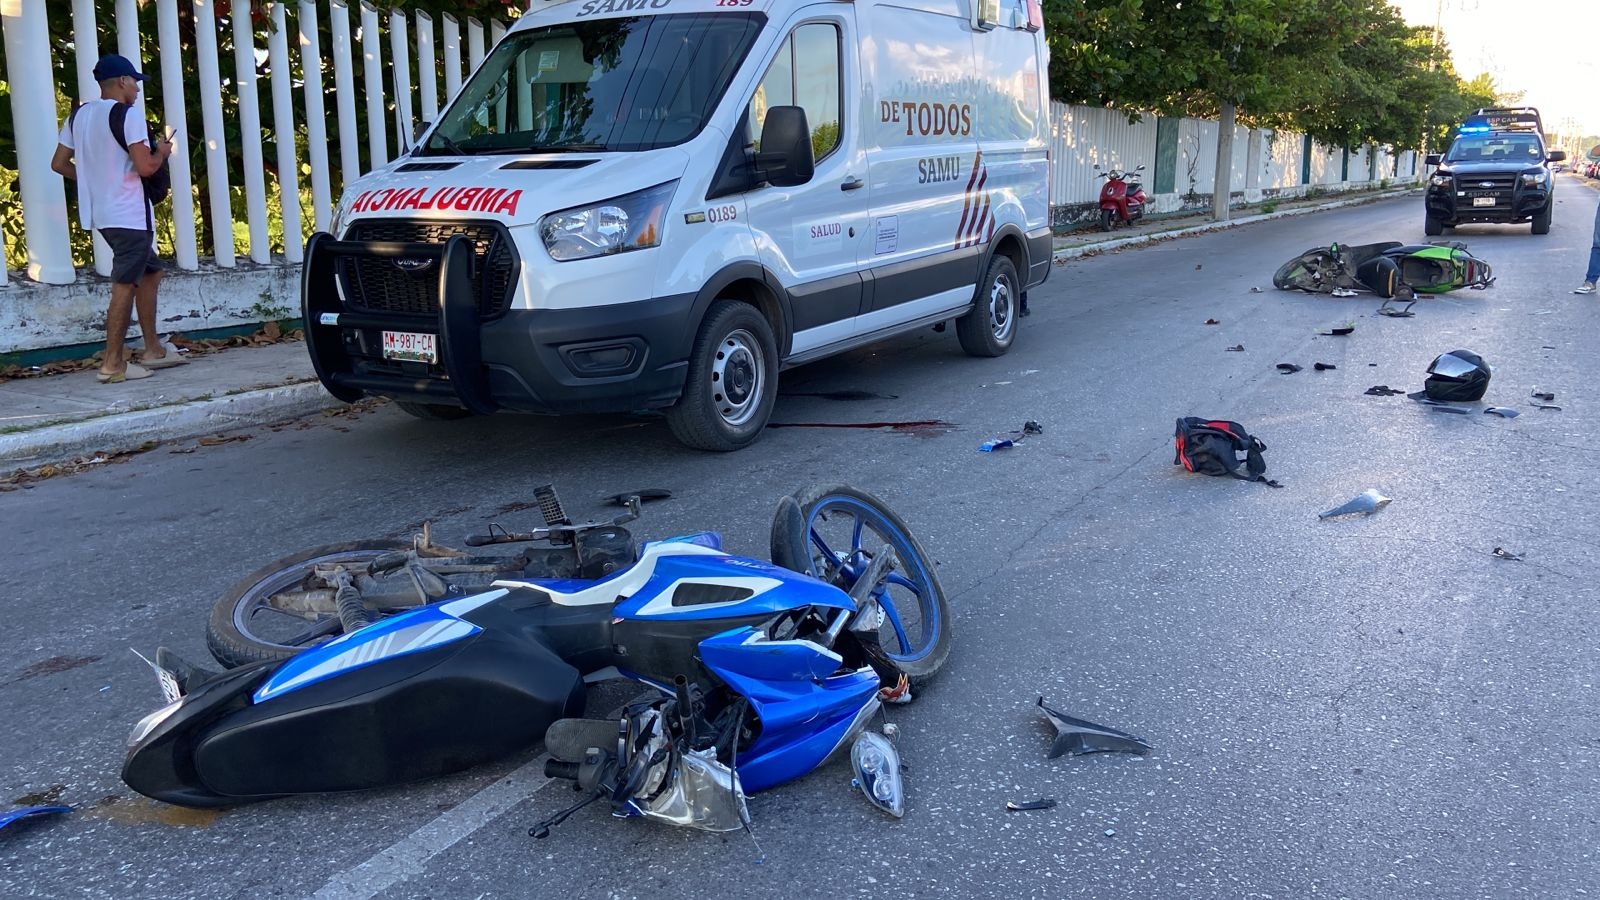 Ambos motociclistas presentaron graves heridas en el cuerpo tras el choque